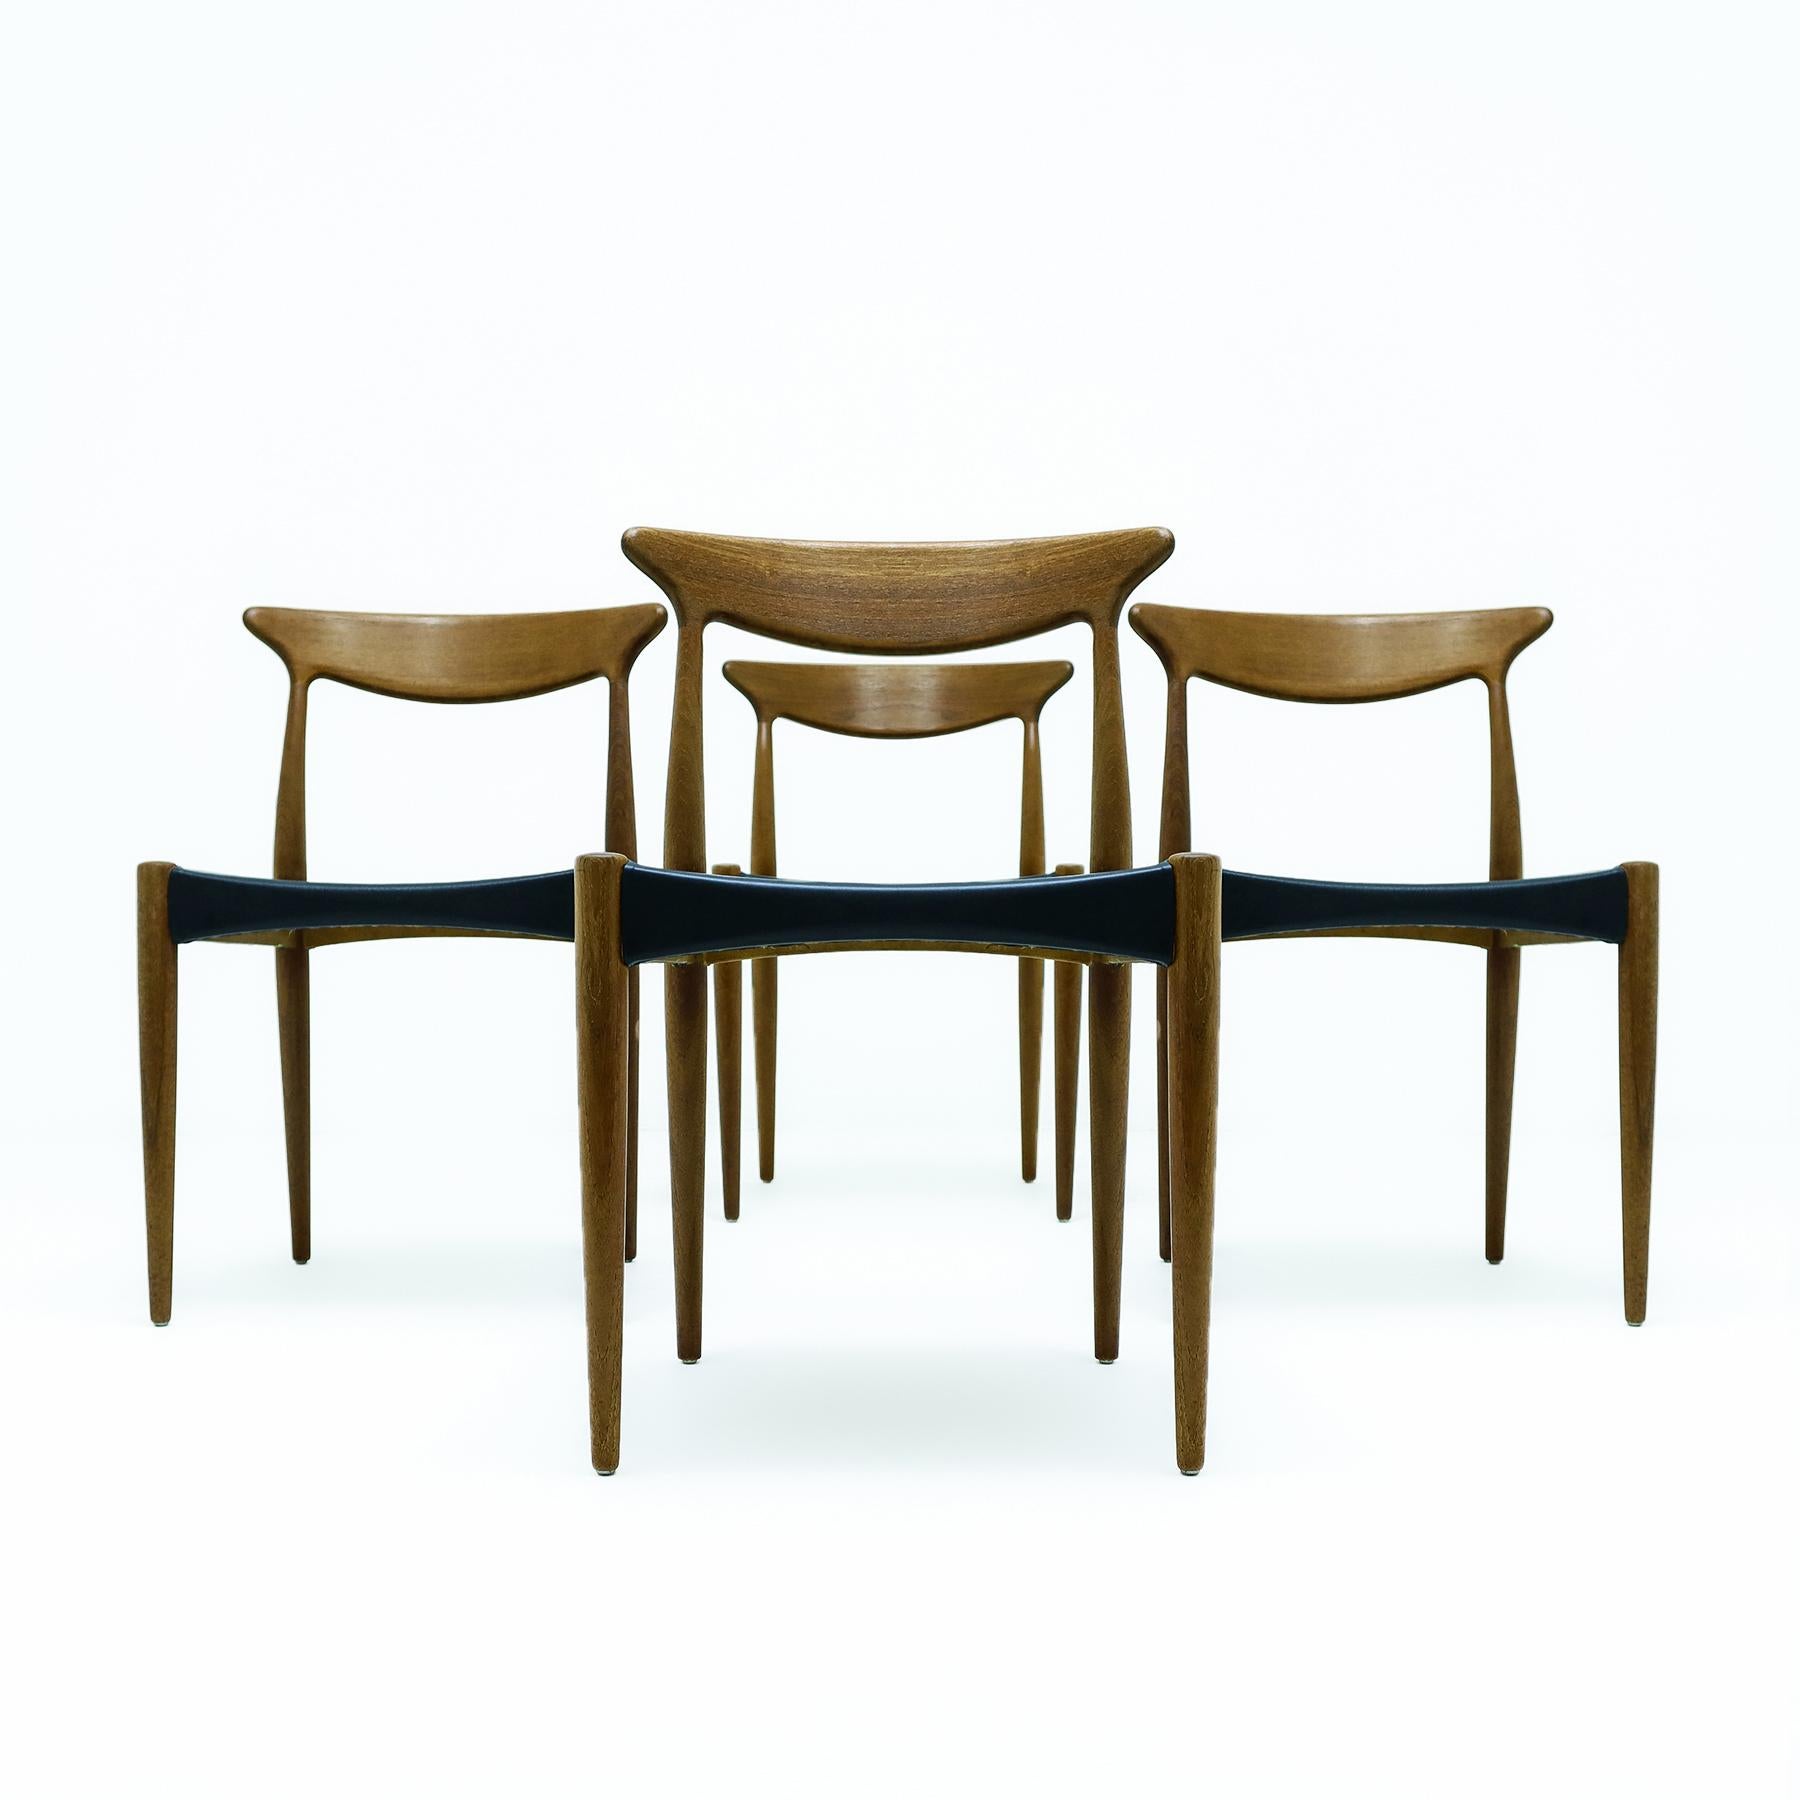 Un ensemble magnifiquement sculptural de 4 chaises de salle à manger en teck vintage danois du milieu du siècle Arne Hovmand-Olsen MK310 avec un revêtement original en vinyle noir pour Mogens Kold, années 1950.

Conçues à l'origine par Olsen en 1951